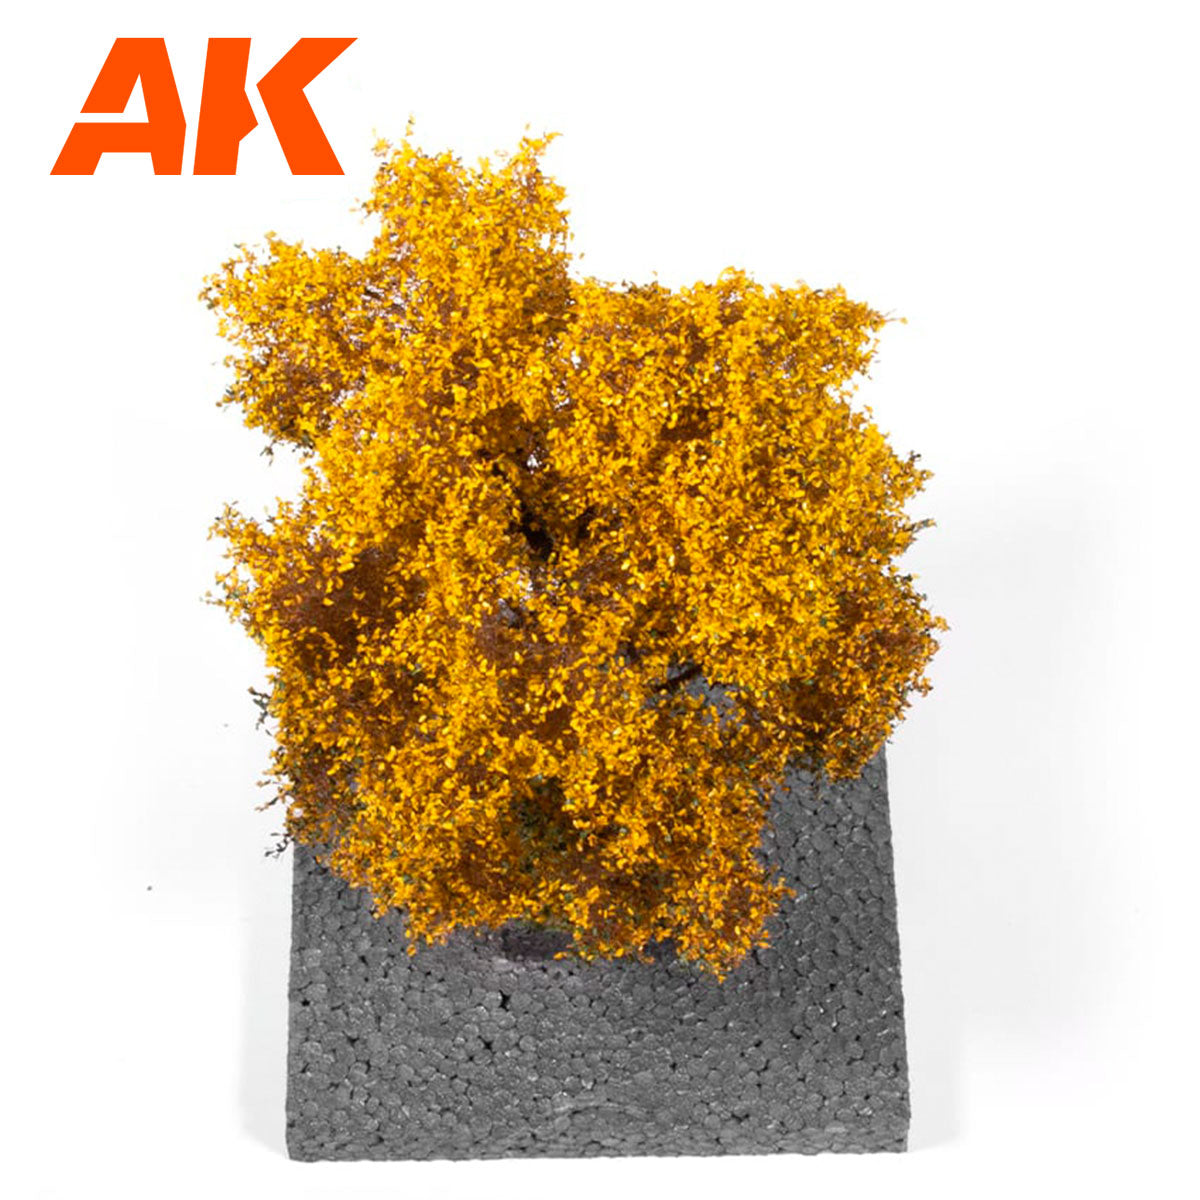 AK8182 - OAK Autumn Tree 1/72